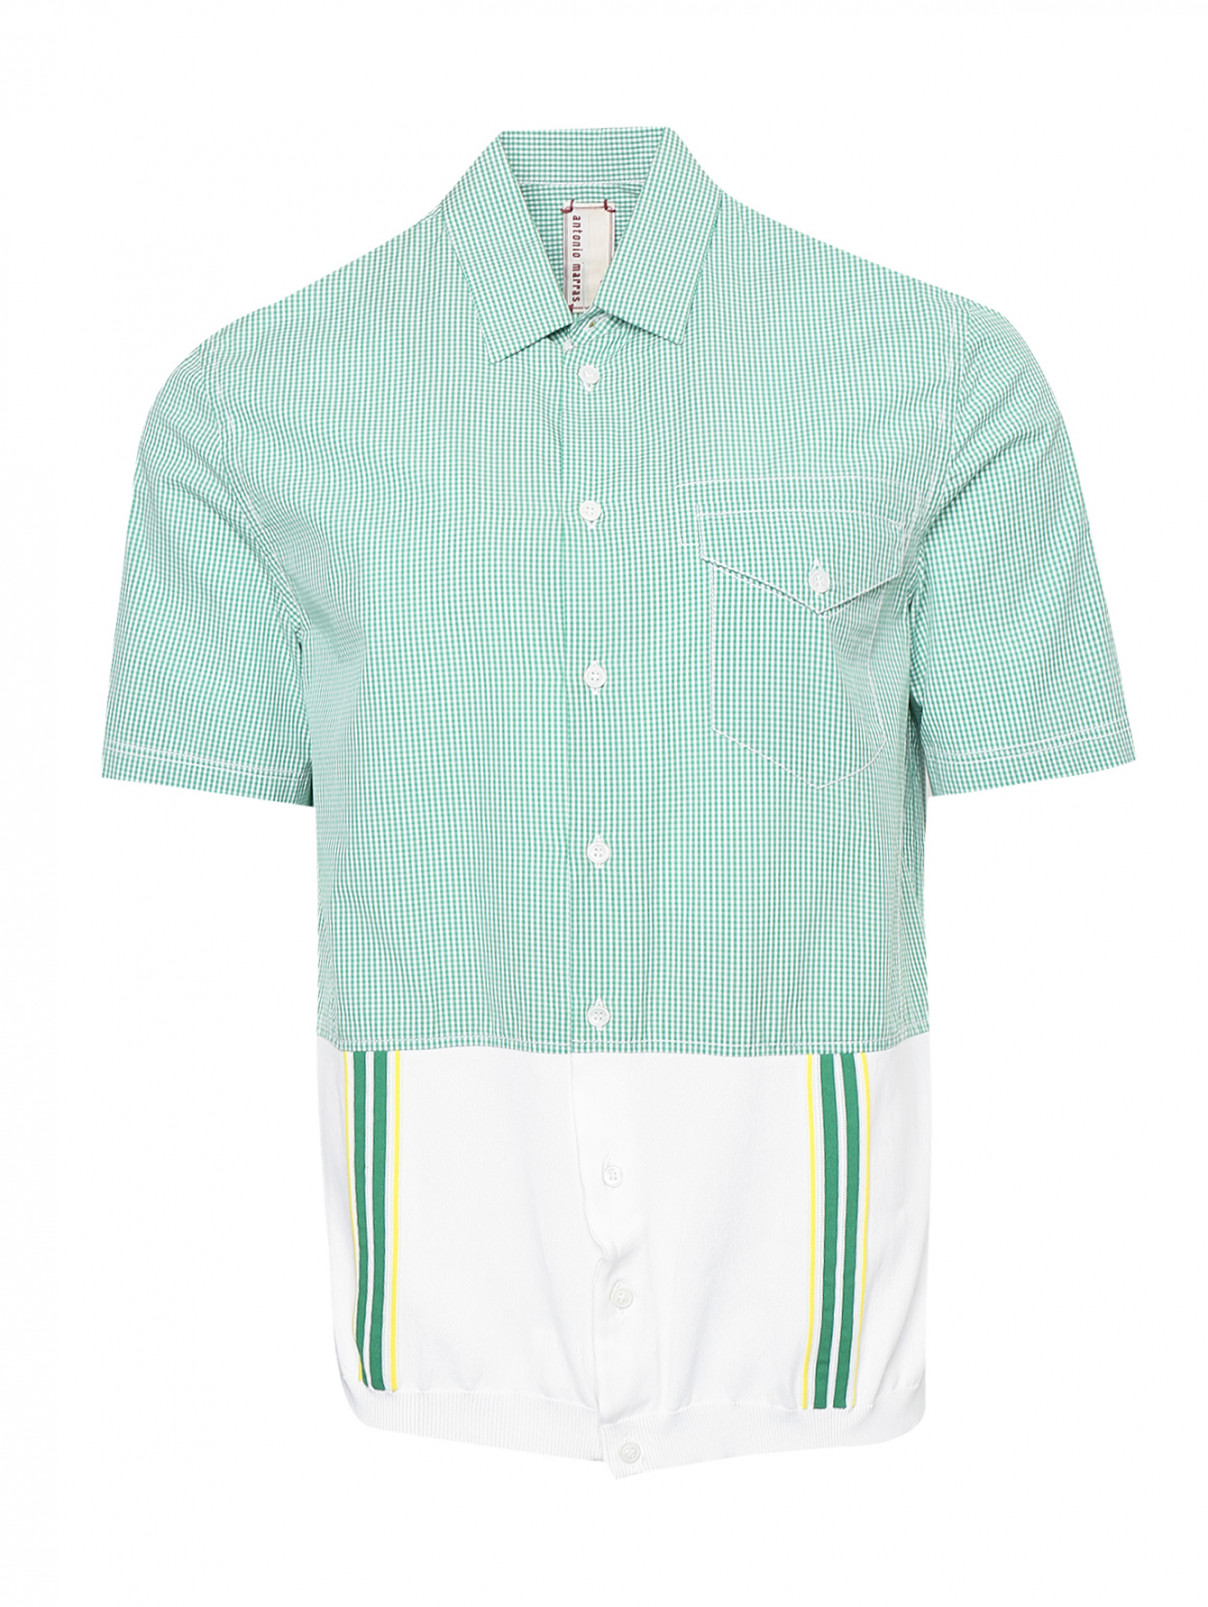 Рубашка с контрастными вставками Antonio Marras  –  Общий вид  – Цвет:  Зеленый